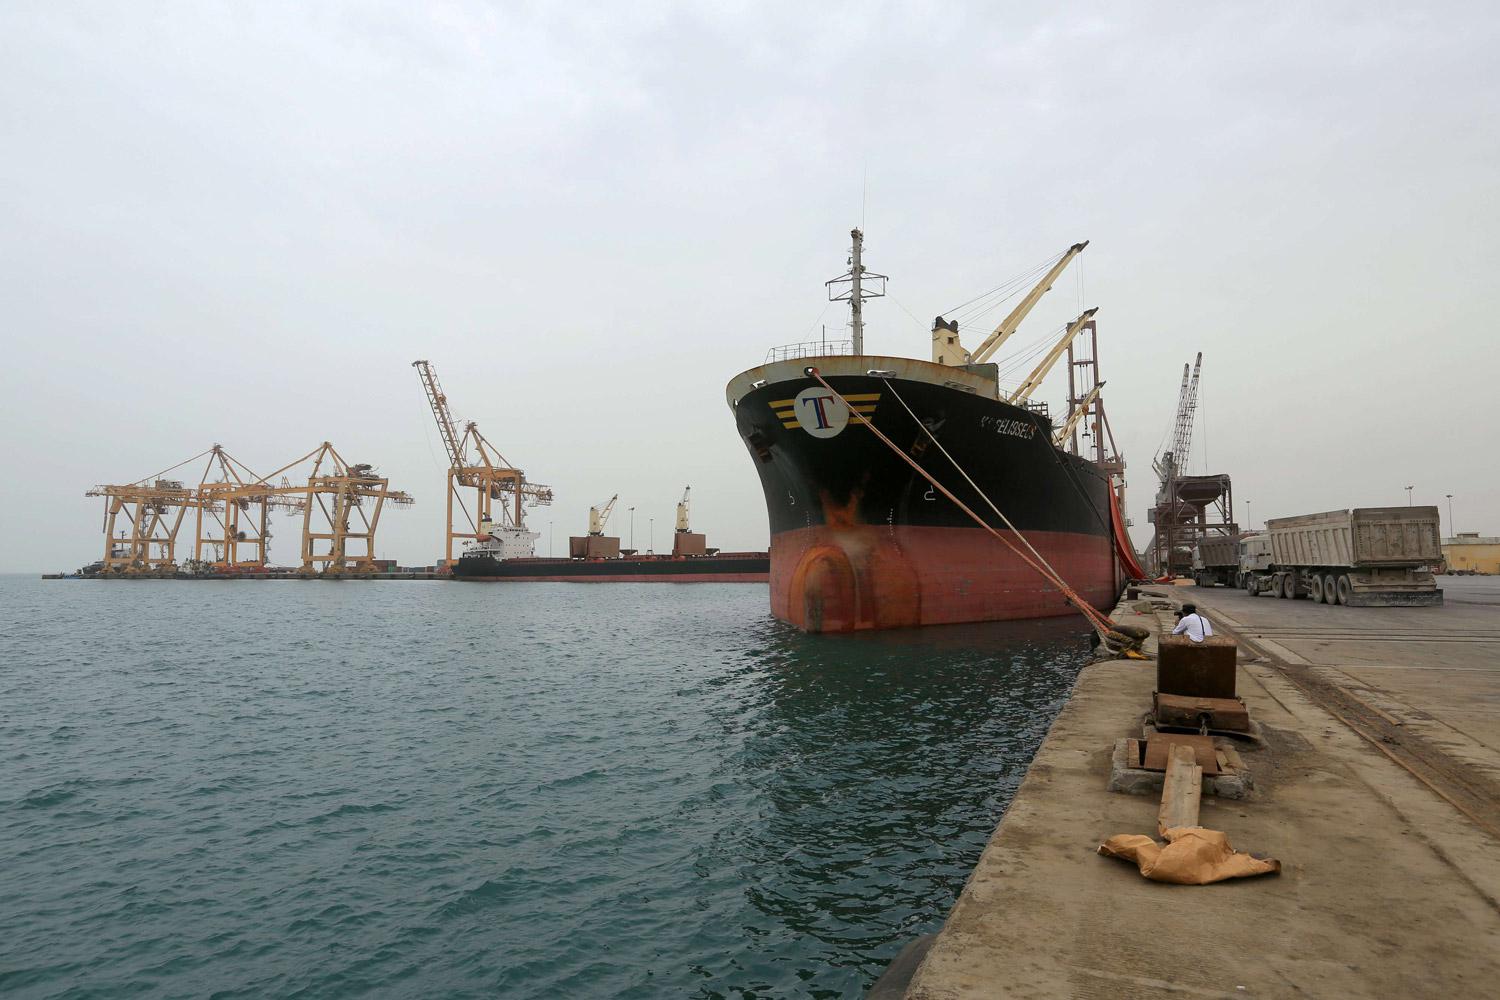  الميليشيات الحوثية تستخدم ميناء الحديدة لتسلم الأسلحة الإيرانية